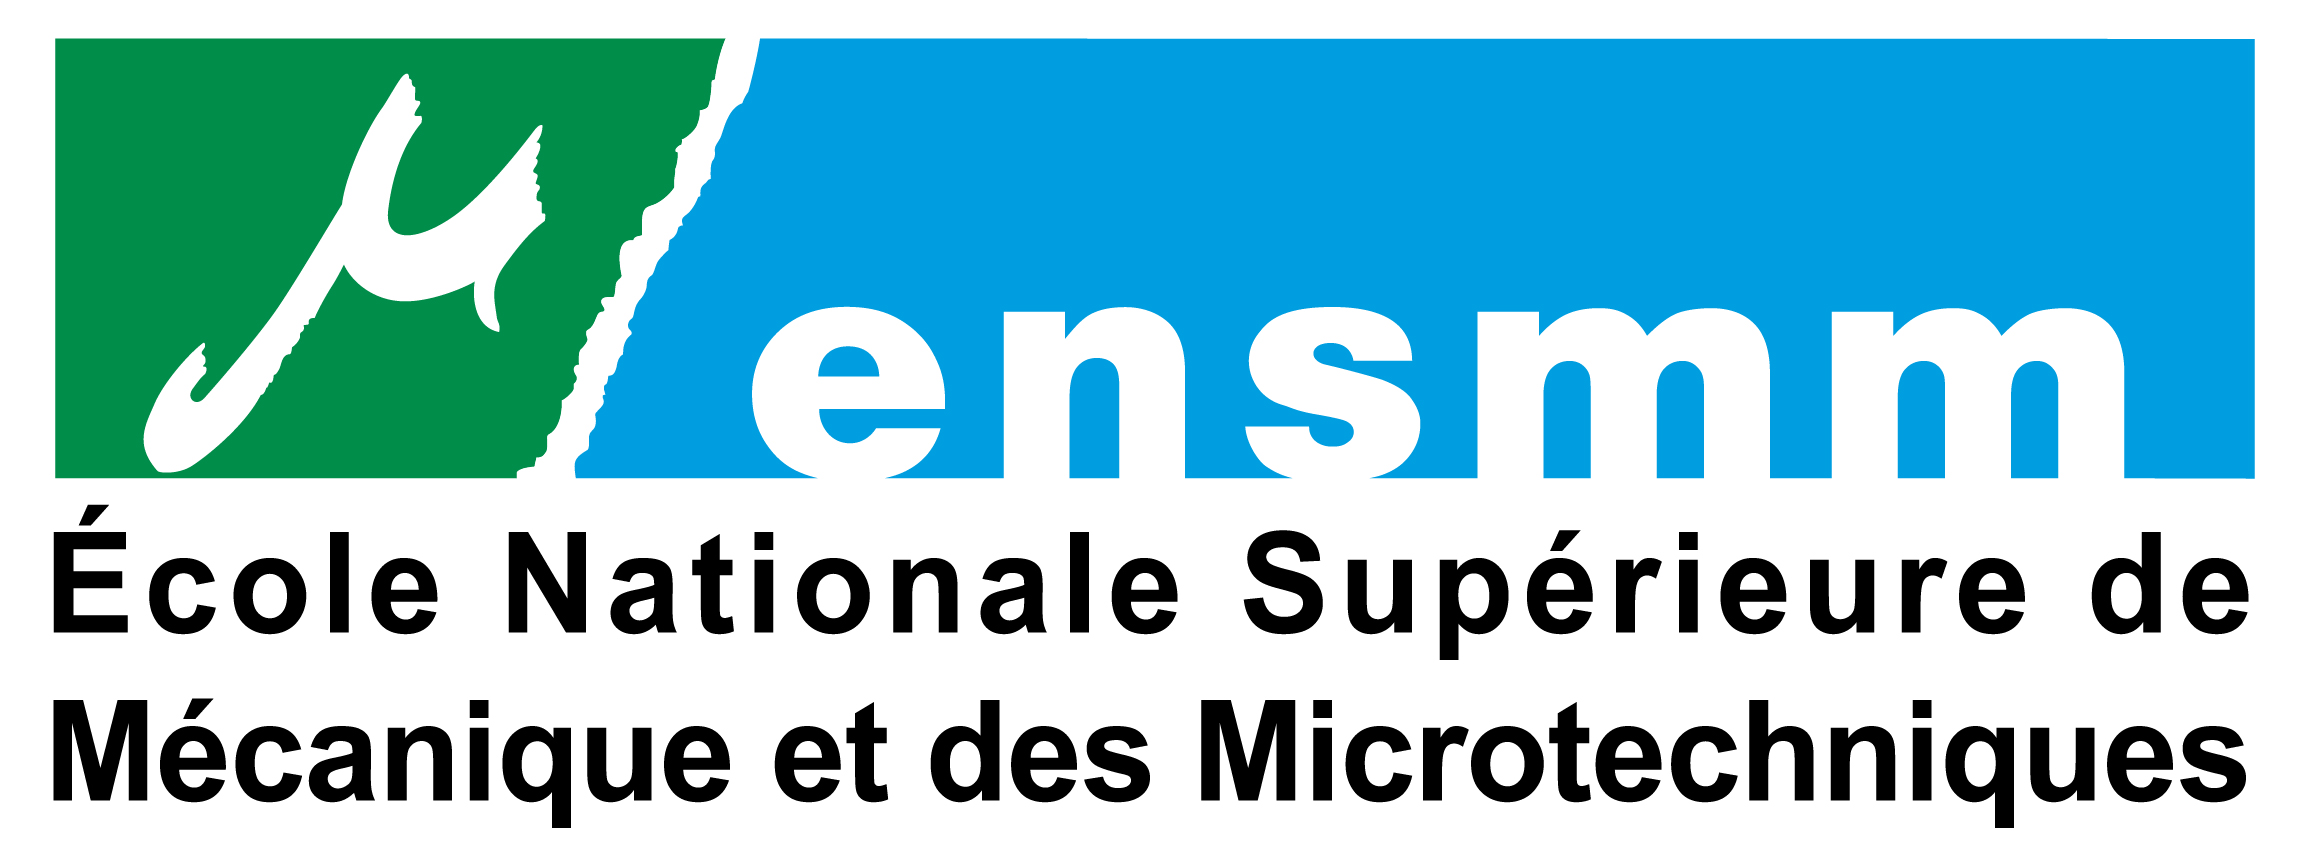 Logo ENSMM Ecole Nationale Supérieure de Mécanique et des Microtechniques